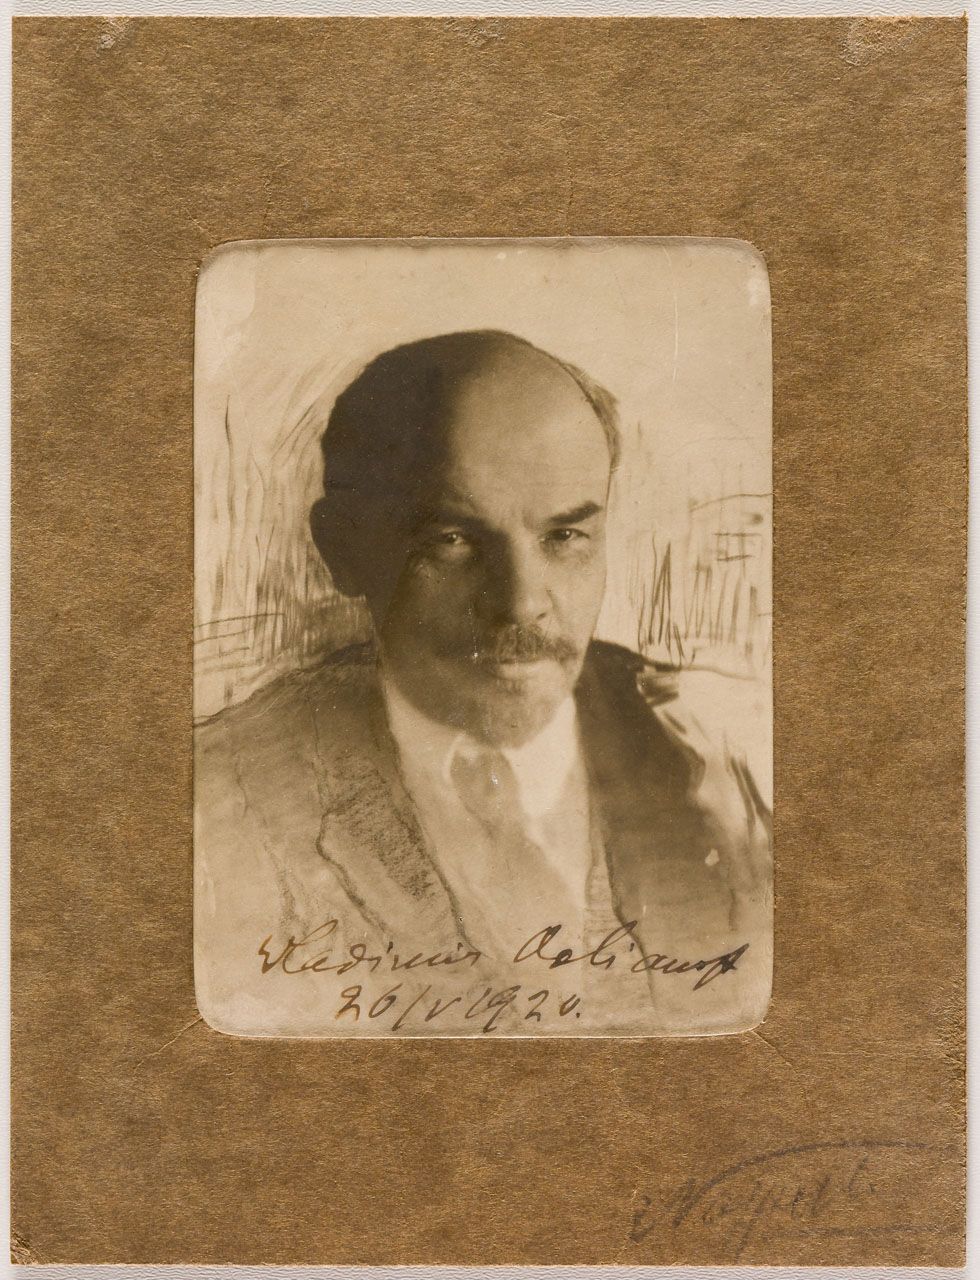 SEHR SELTENES SIGNIERTES PHOTO VON LENIN Photographie, signiert von Lenin mit Vl&hellip;